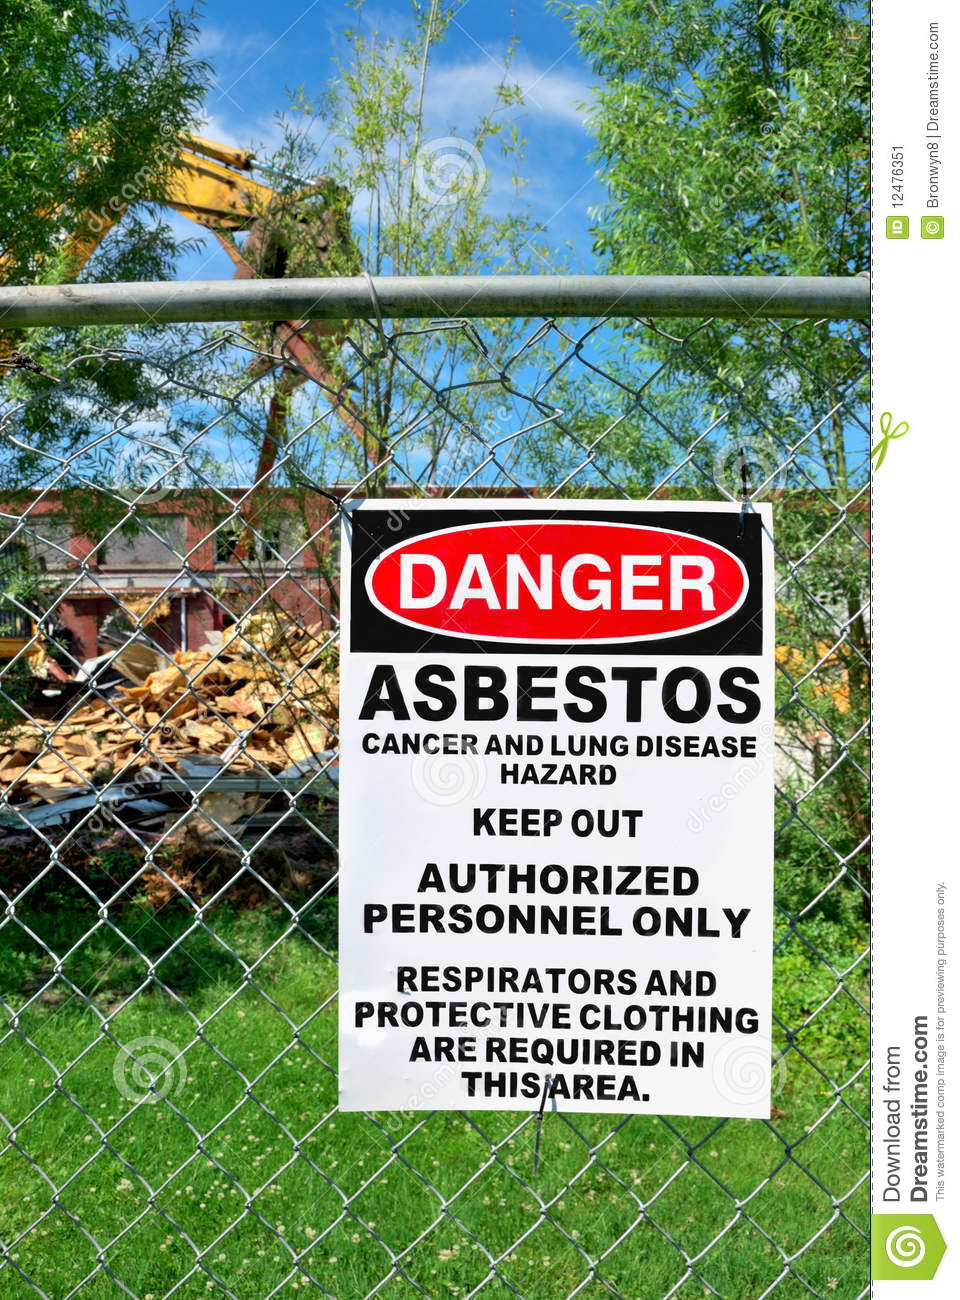 Asbestos Warning Stock Image   Image  12476351